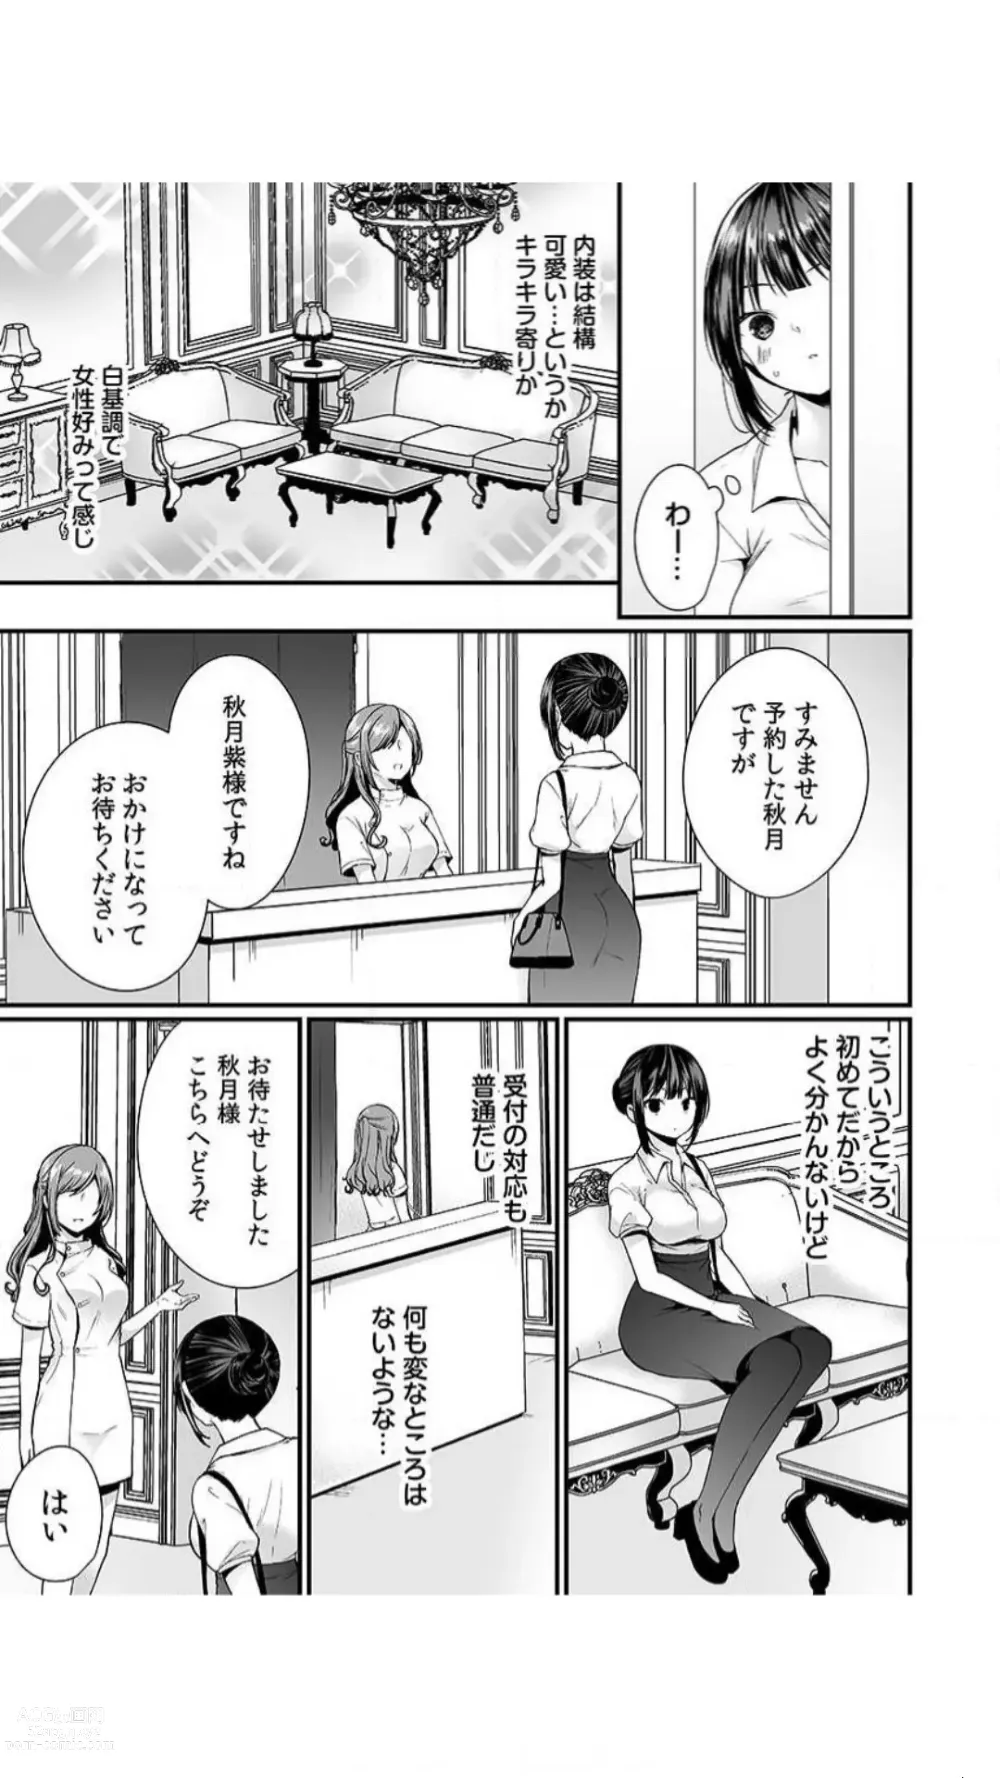 Page 5 of manga Ikasare Sugite Chousa Muri... Sennyuu! Uwasa no Kaikan Massage-ten